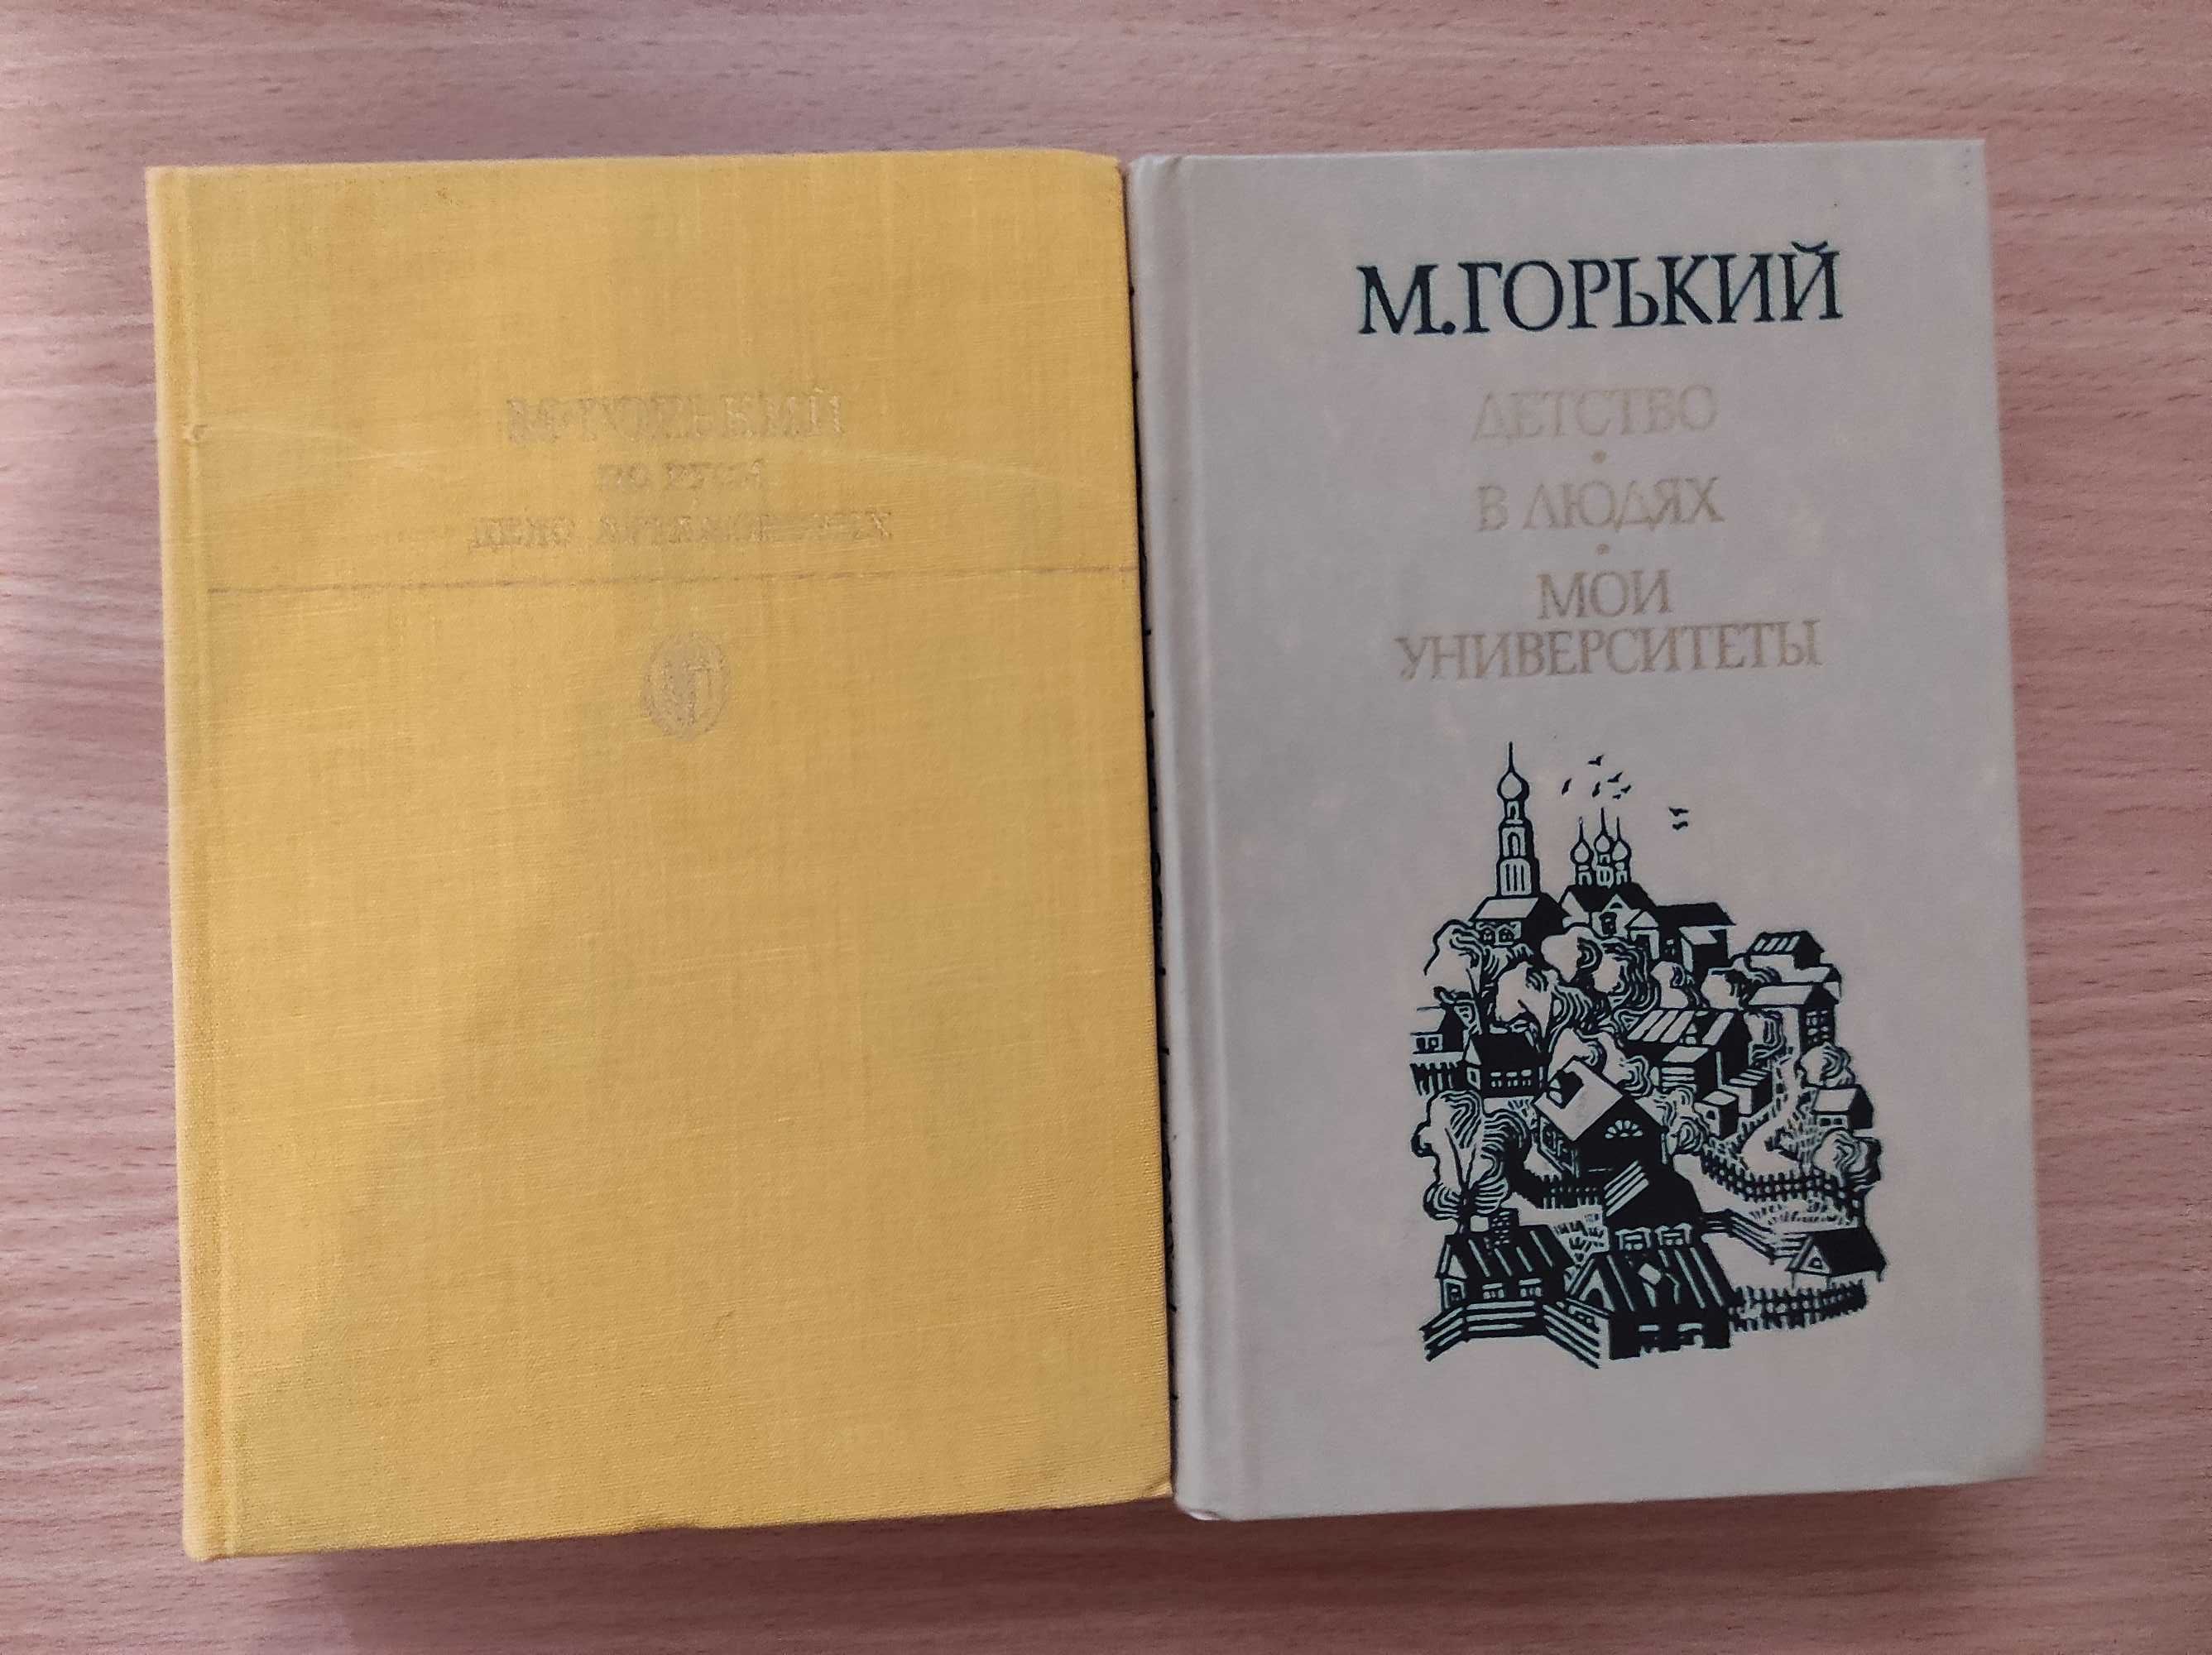 Максим Горький (2 книги)